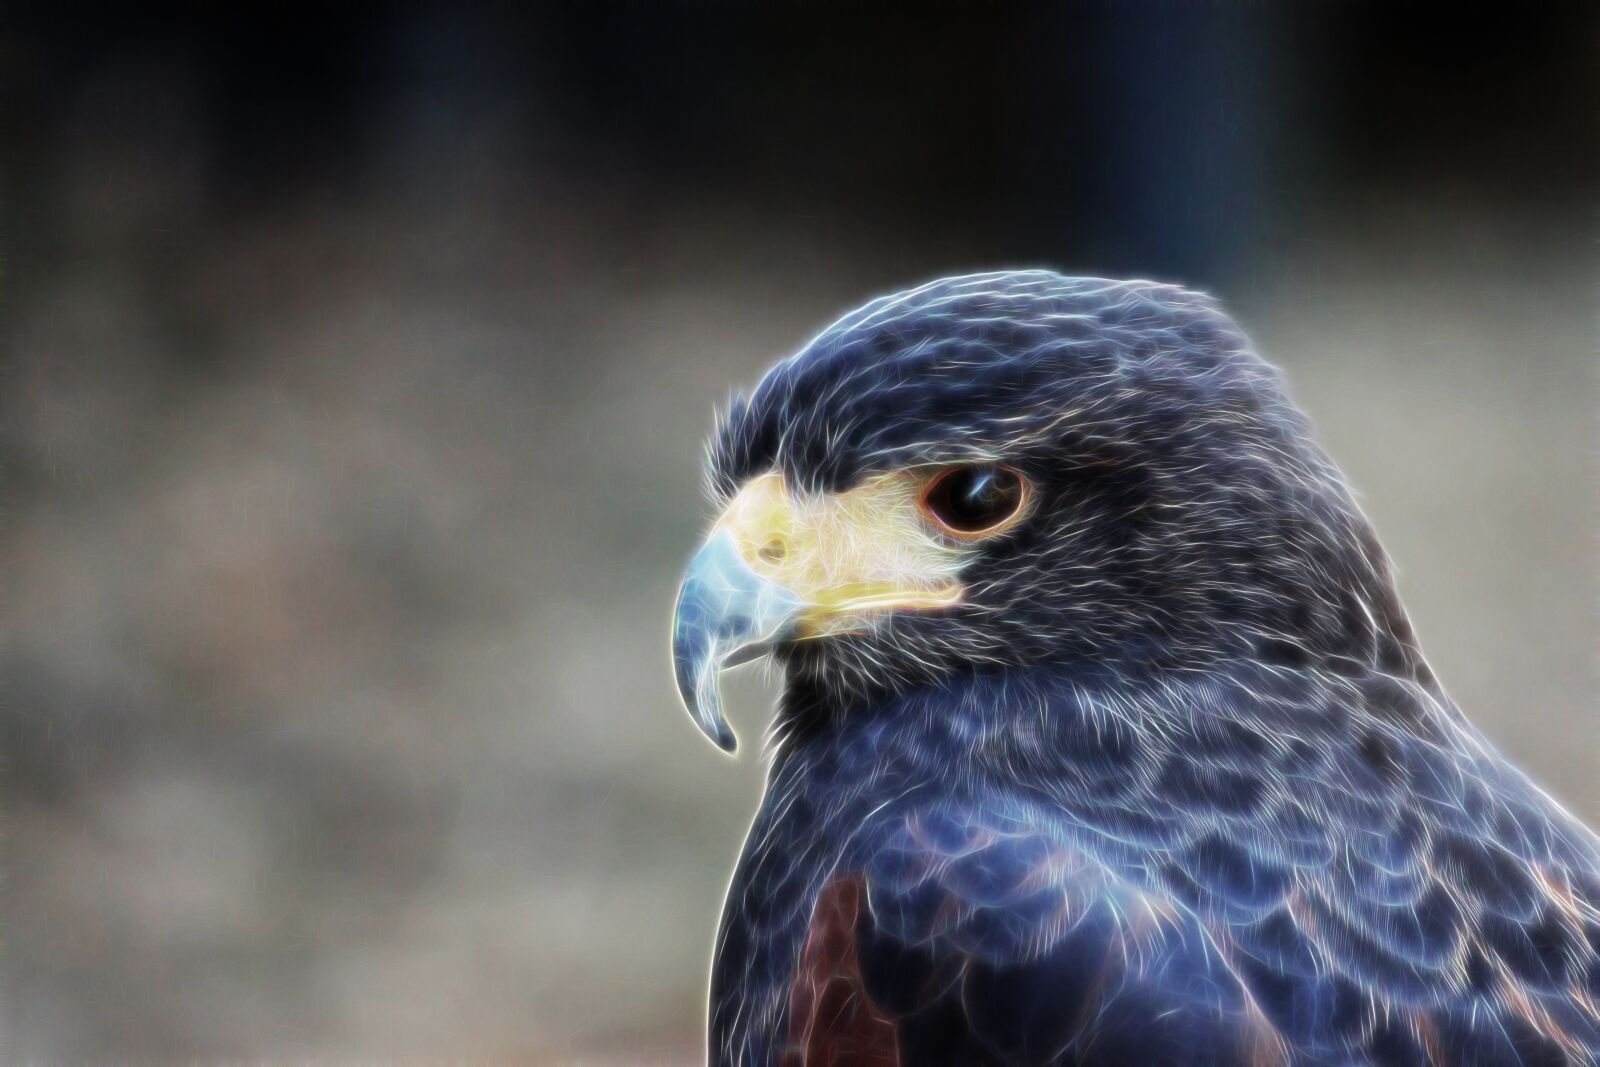 Canon EOS 600D (Rebel EOS T3i / EOS Kiss X5) sample photo. Falcon, big hawk, bird photography